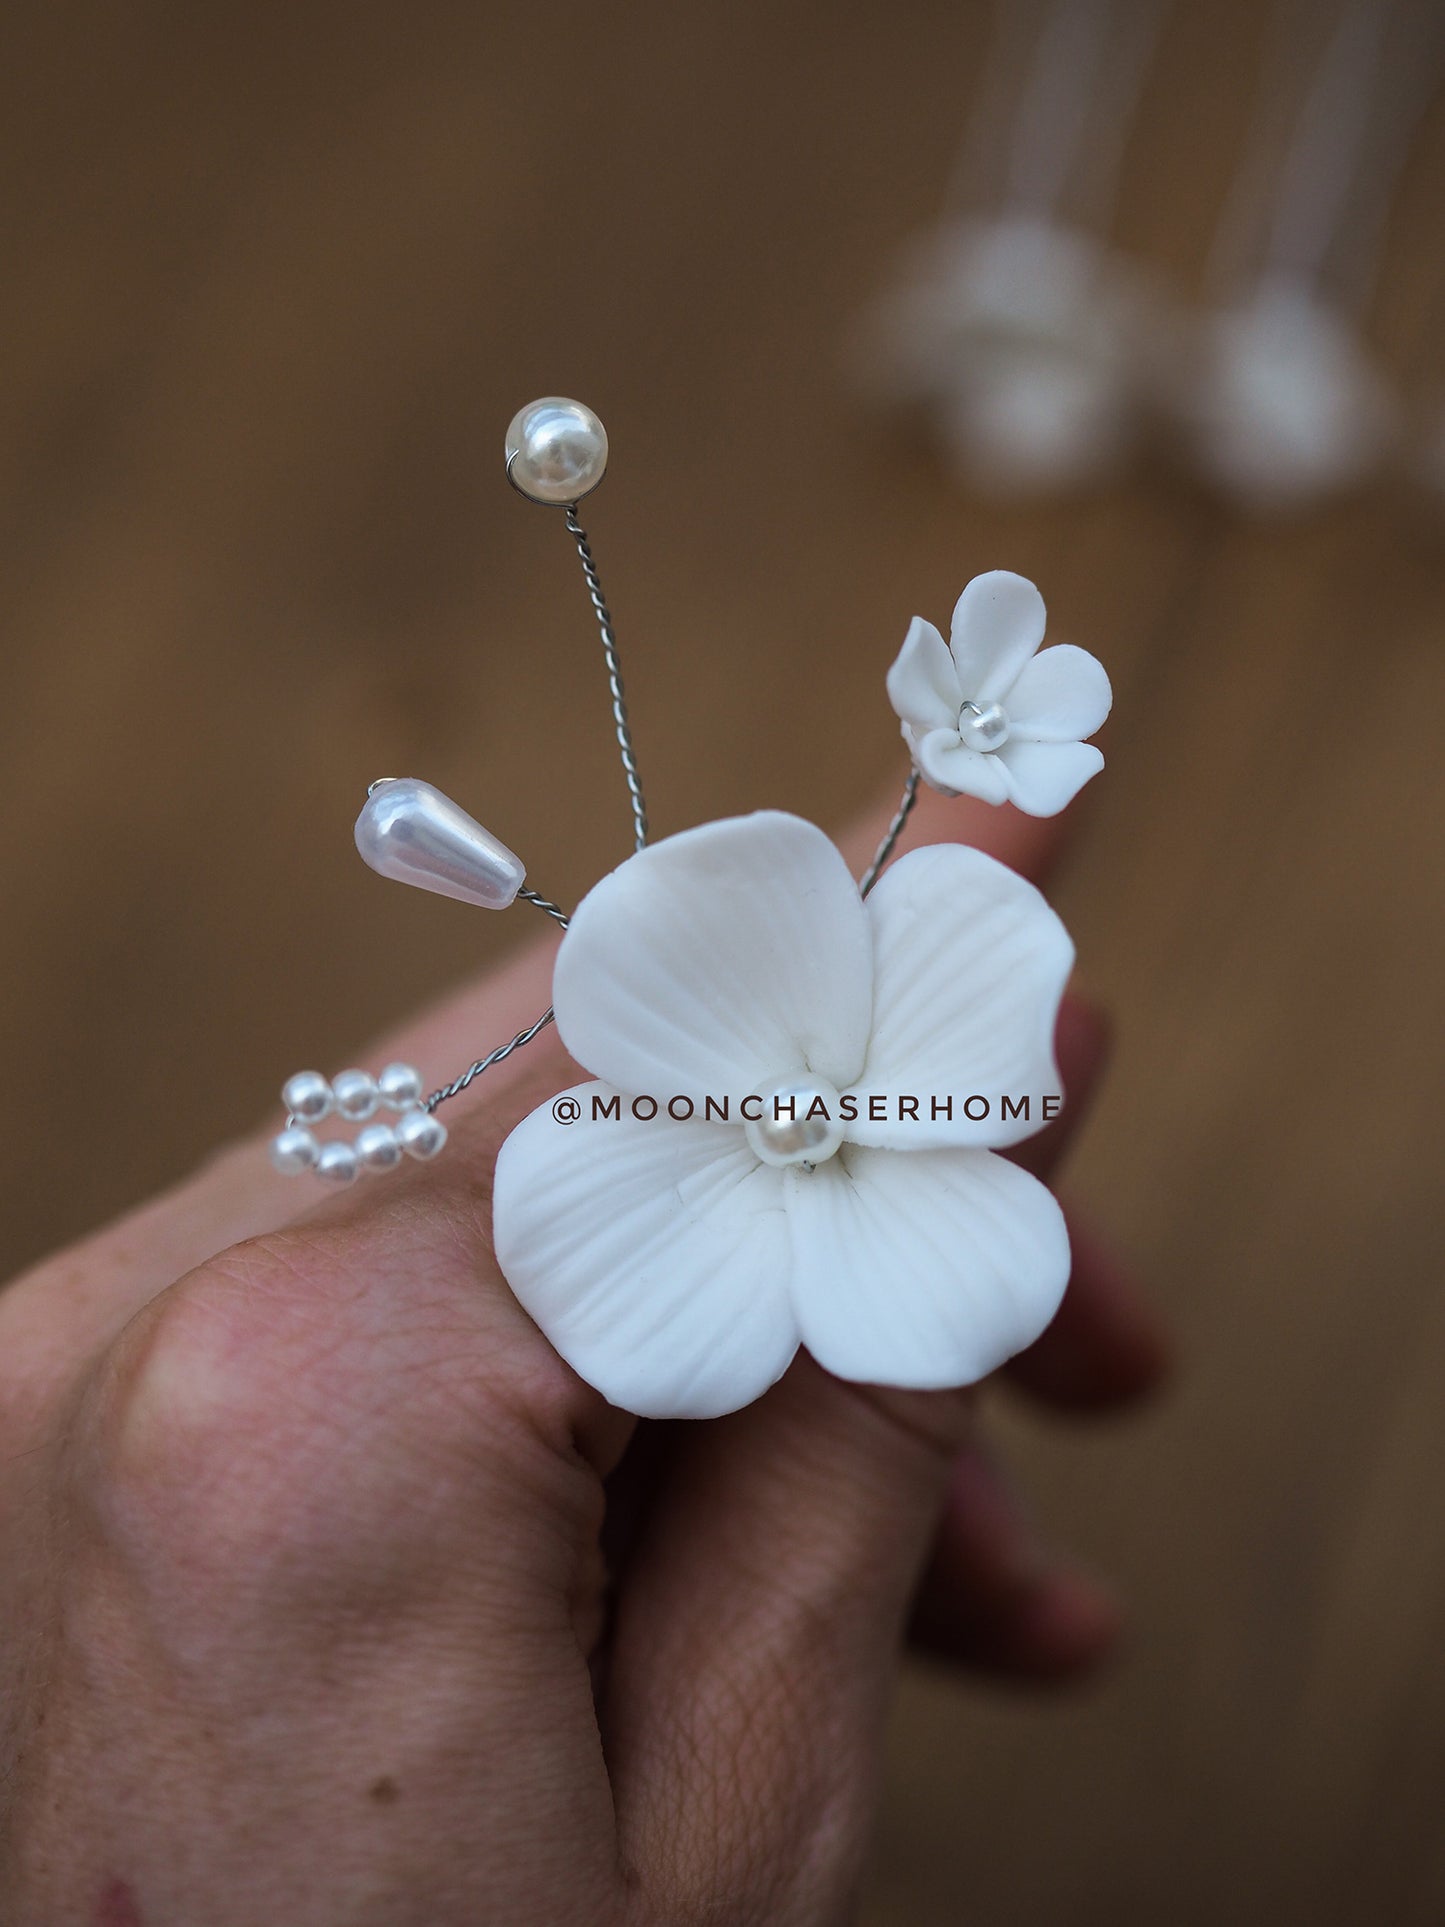 Ann-White flower hair pins 4 pcs, Wedding hair piece, Bride hair accessories, Floral wedding hairpiece, bridal floral hair pins